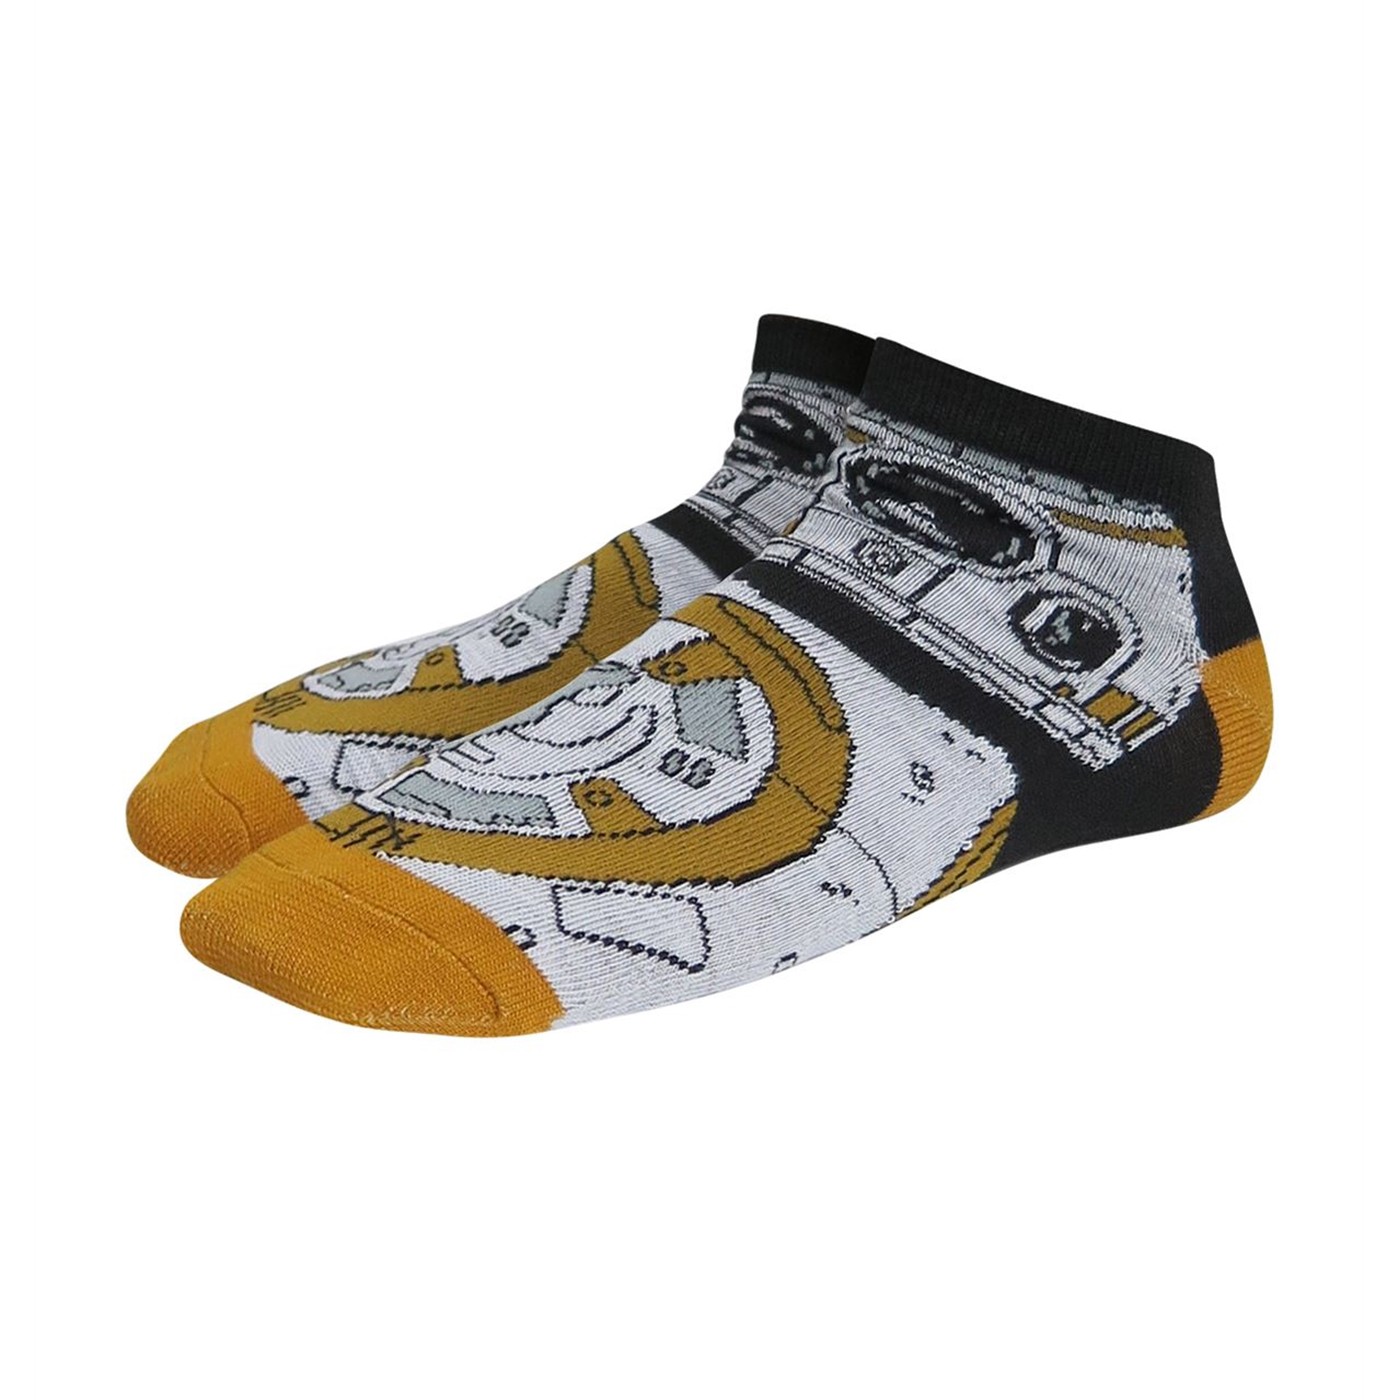 Star Wars Now & Then Women's Low-Cut Sock 3 Pack